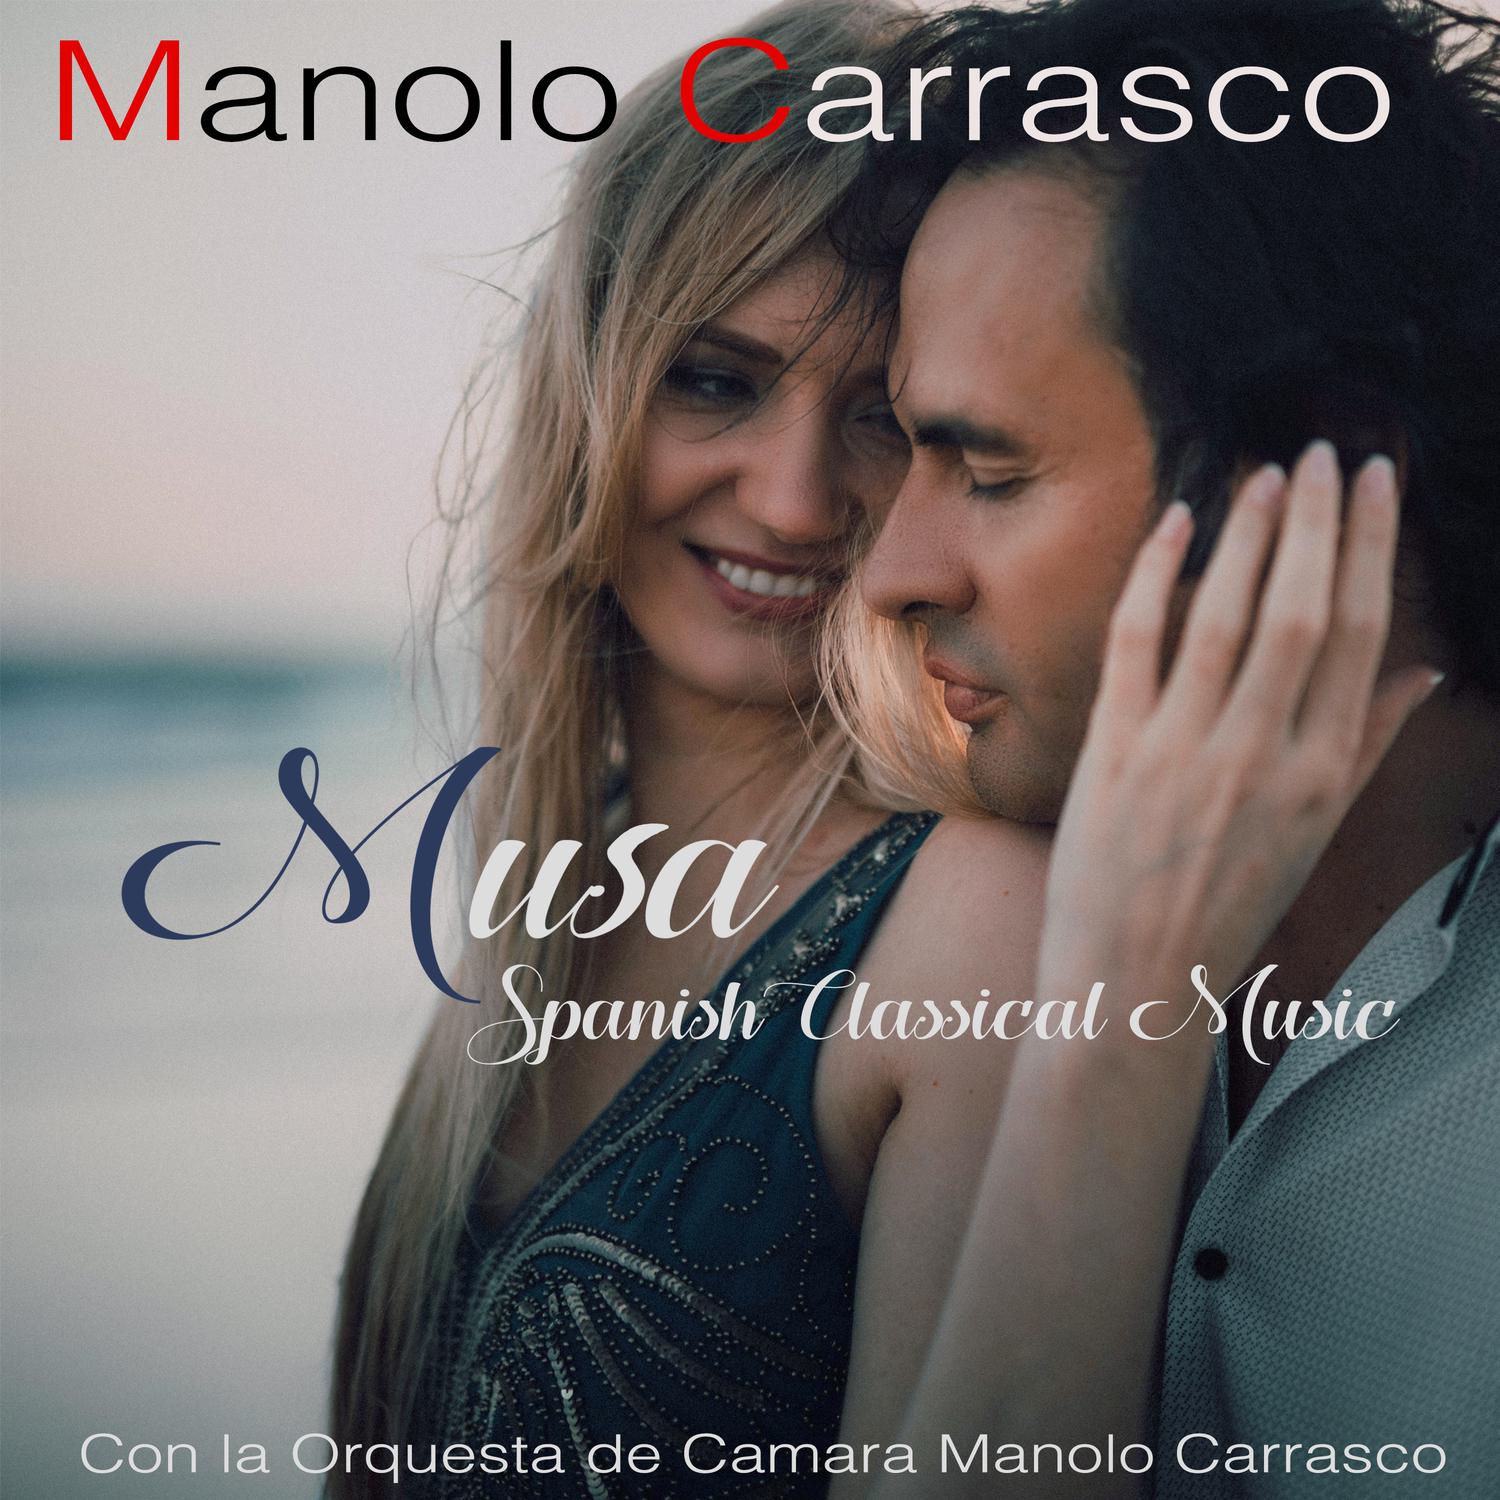 Manolo Carrasco - Oceano